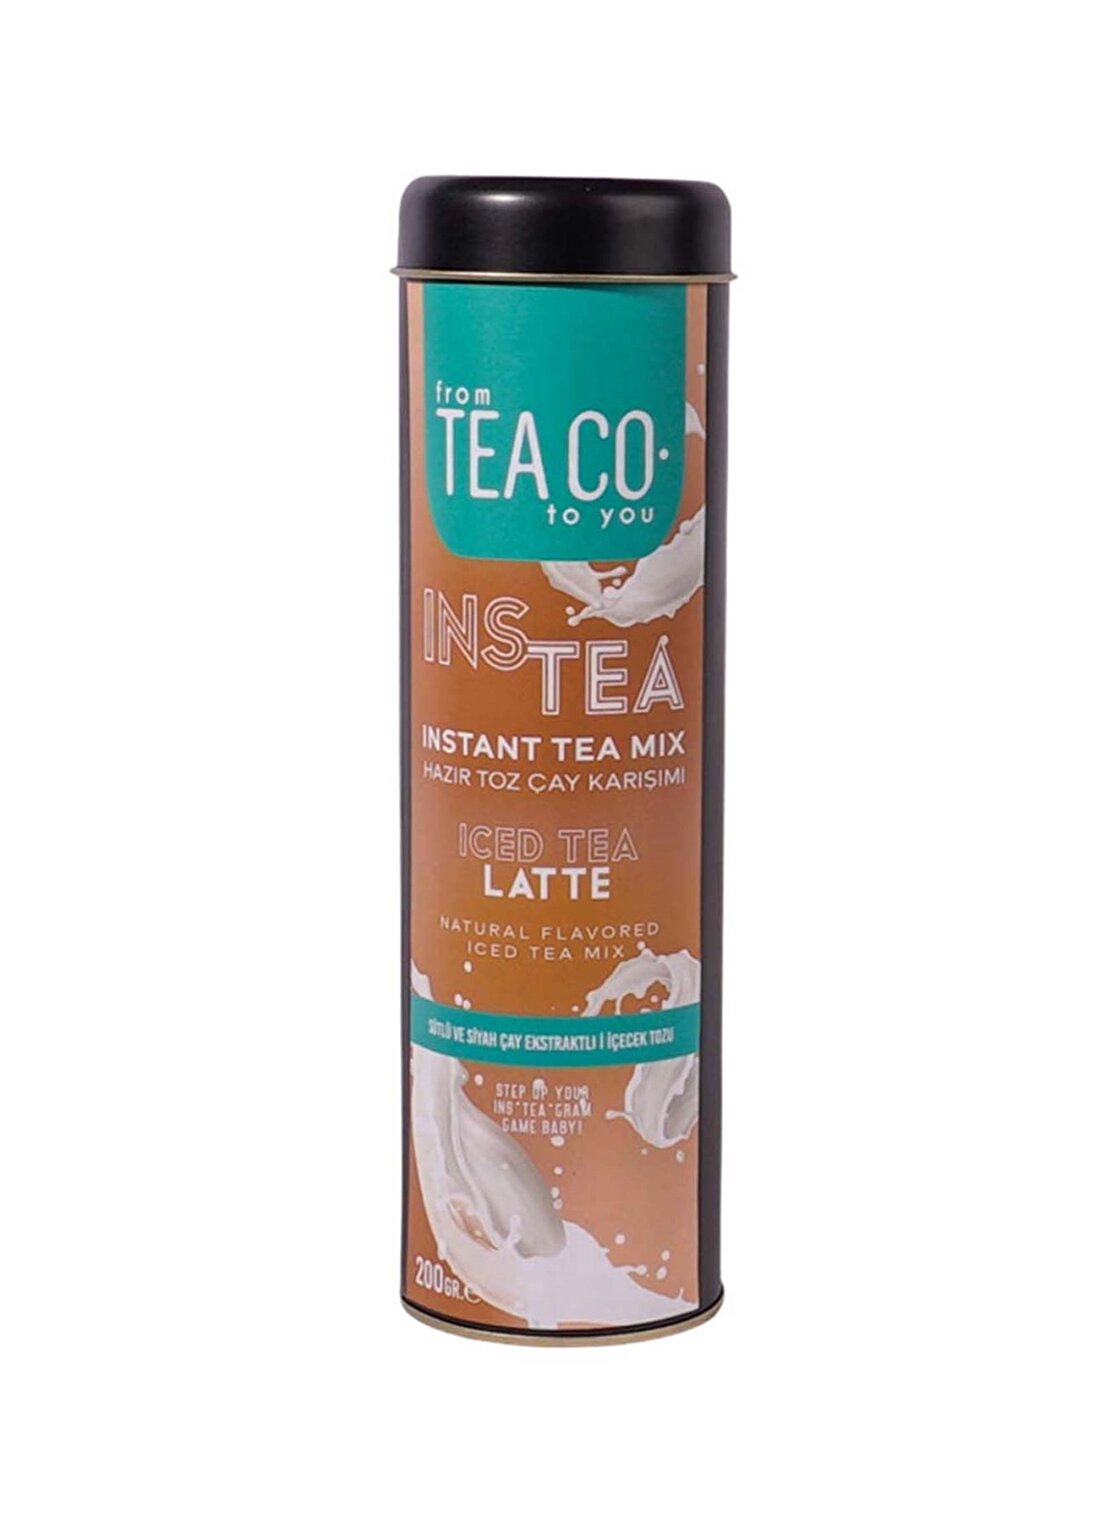 Tea Co - Instea Latte - Süt Tozlu Ve Siyah Çay Ekstratlı İçecek Tozu - 200Gr